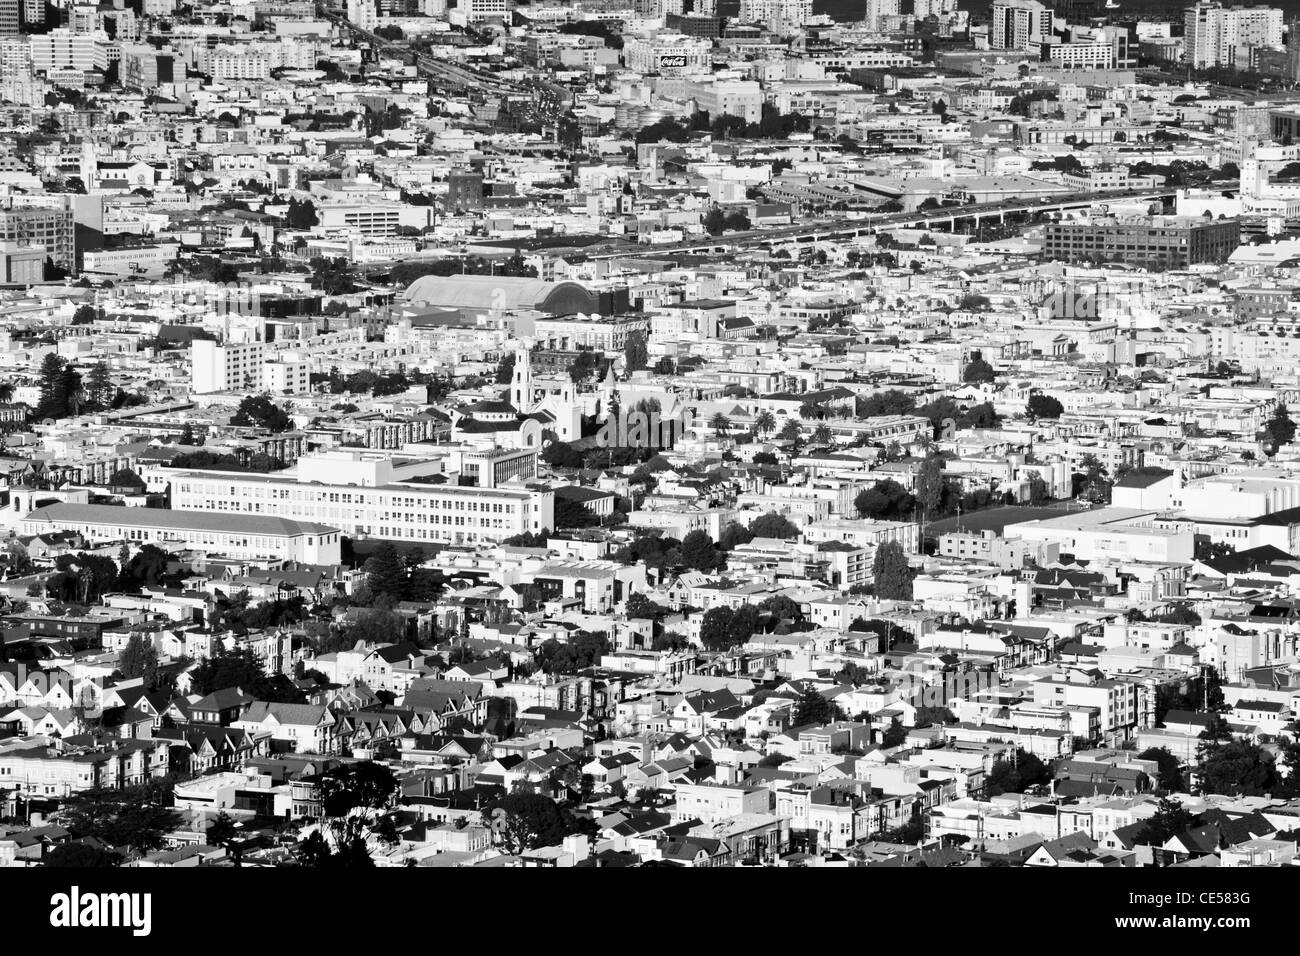 schwarz / weiß Foto von San Francisco Ortsrand, zeigt die dicht gedrängten Zersiedelung von Gebäuden, Straßen und Bäume. Stockfoto